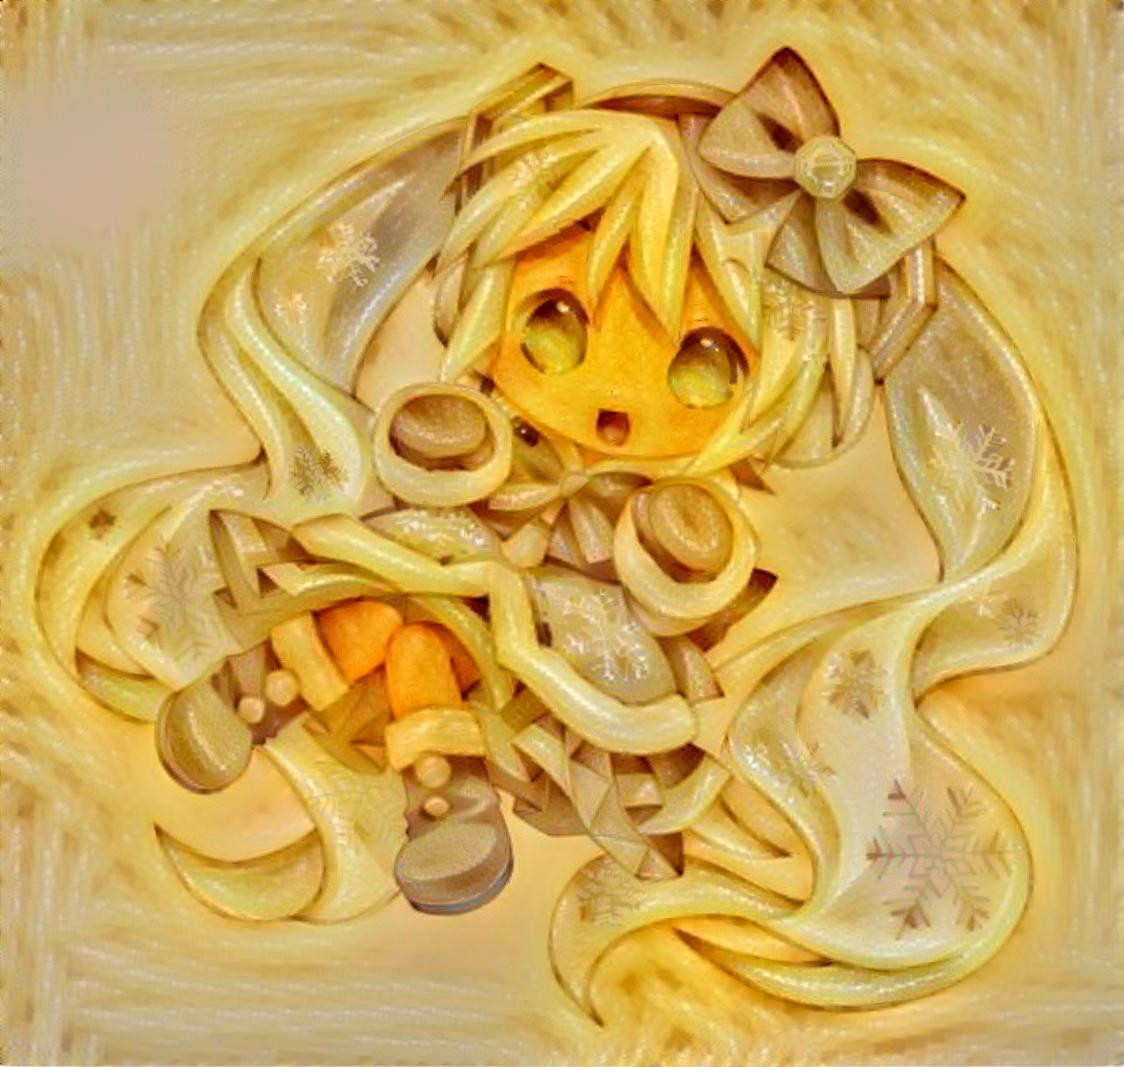 spaghetti anime girl man eten them｜TikTok Search